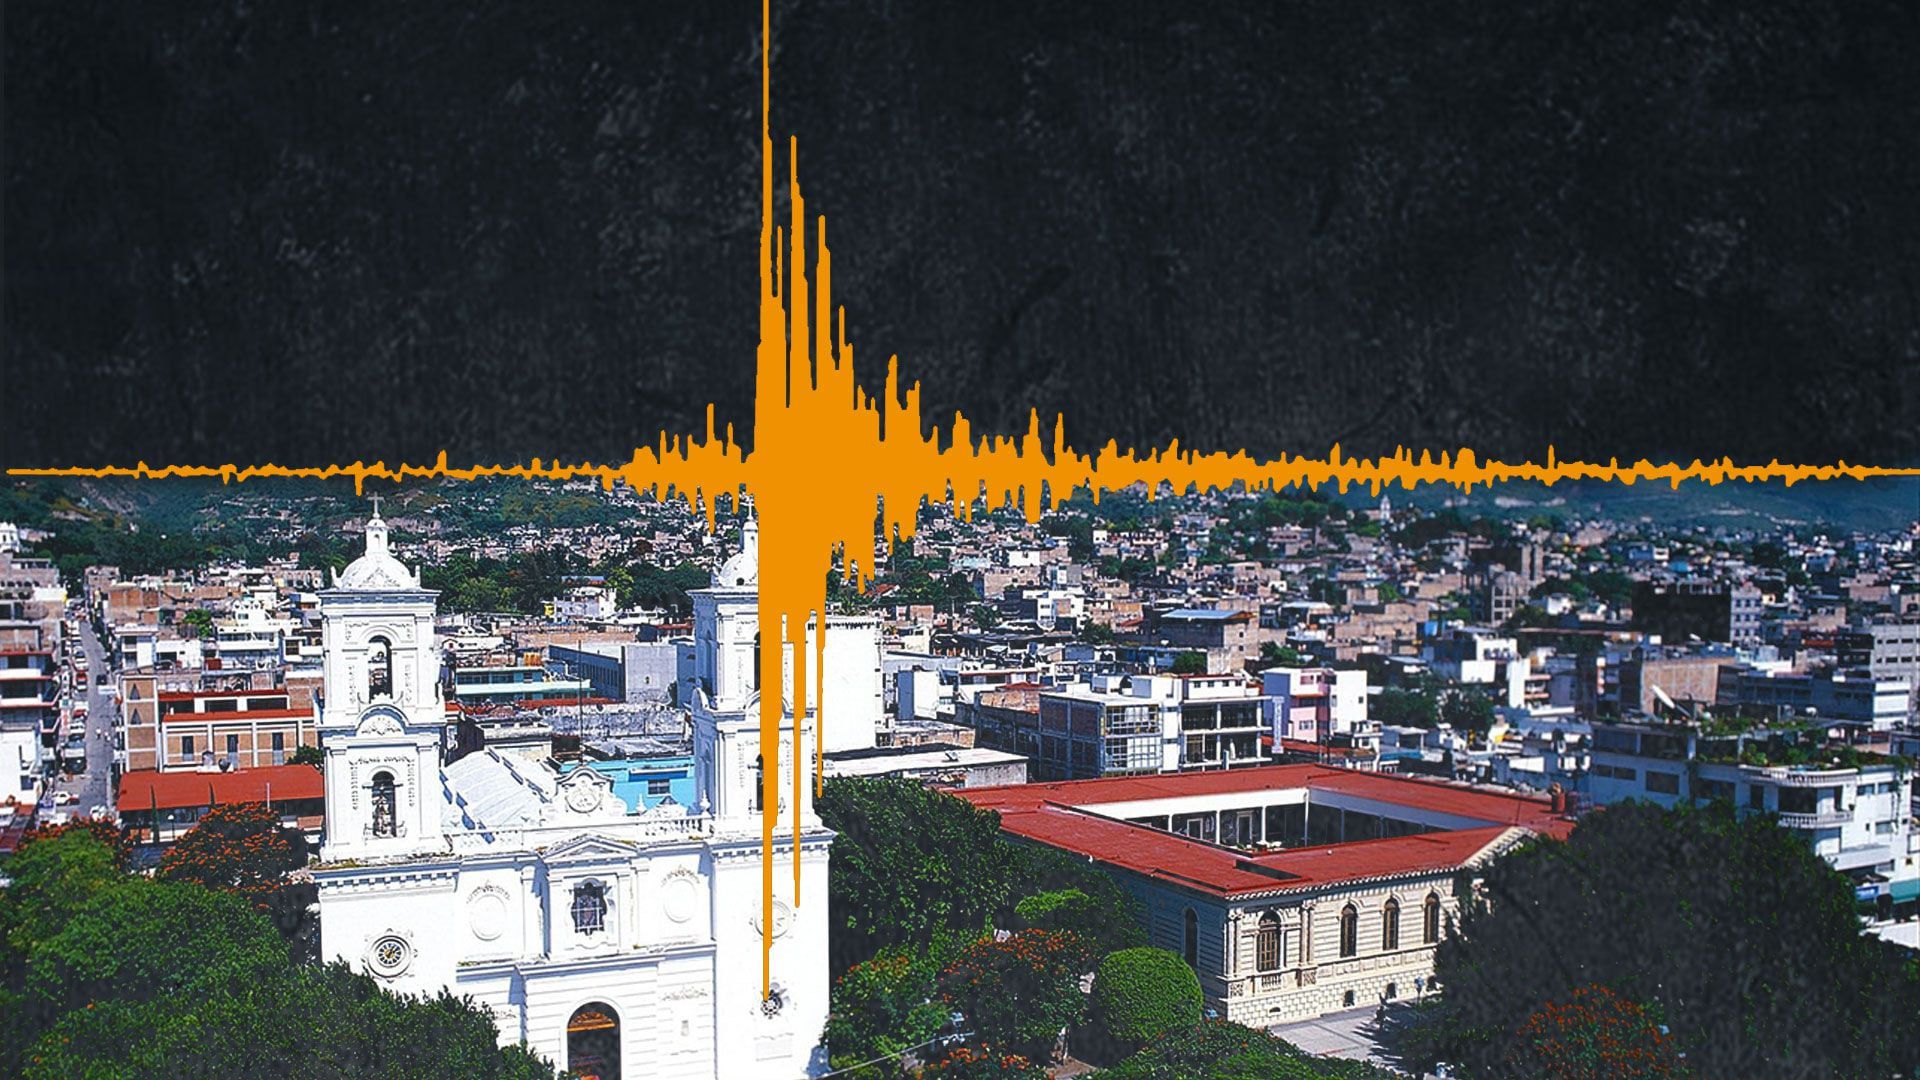 La información preliminar señala que el sismo ocurrió en Santa Rosalia. (Infobae)